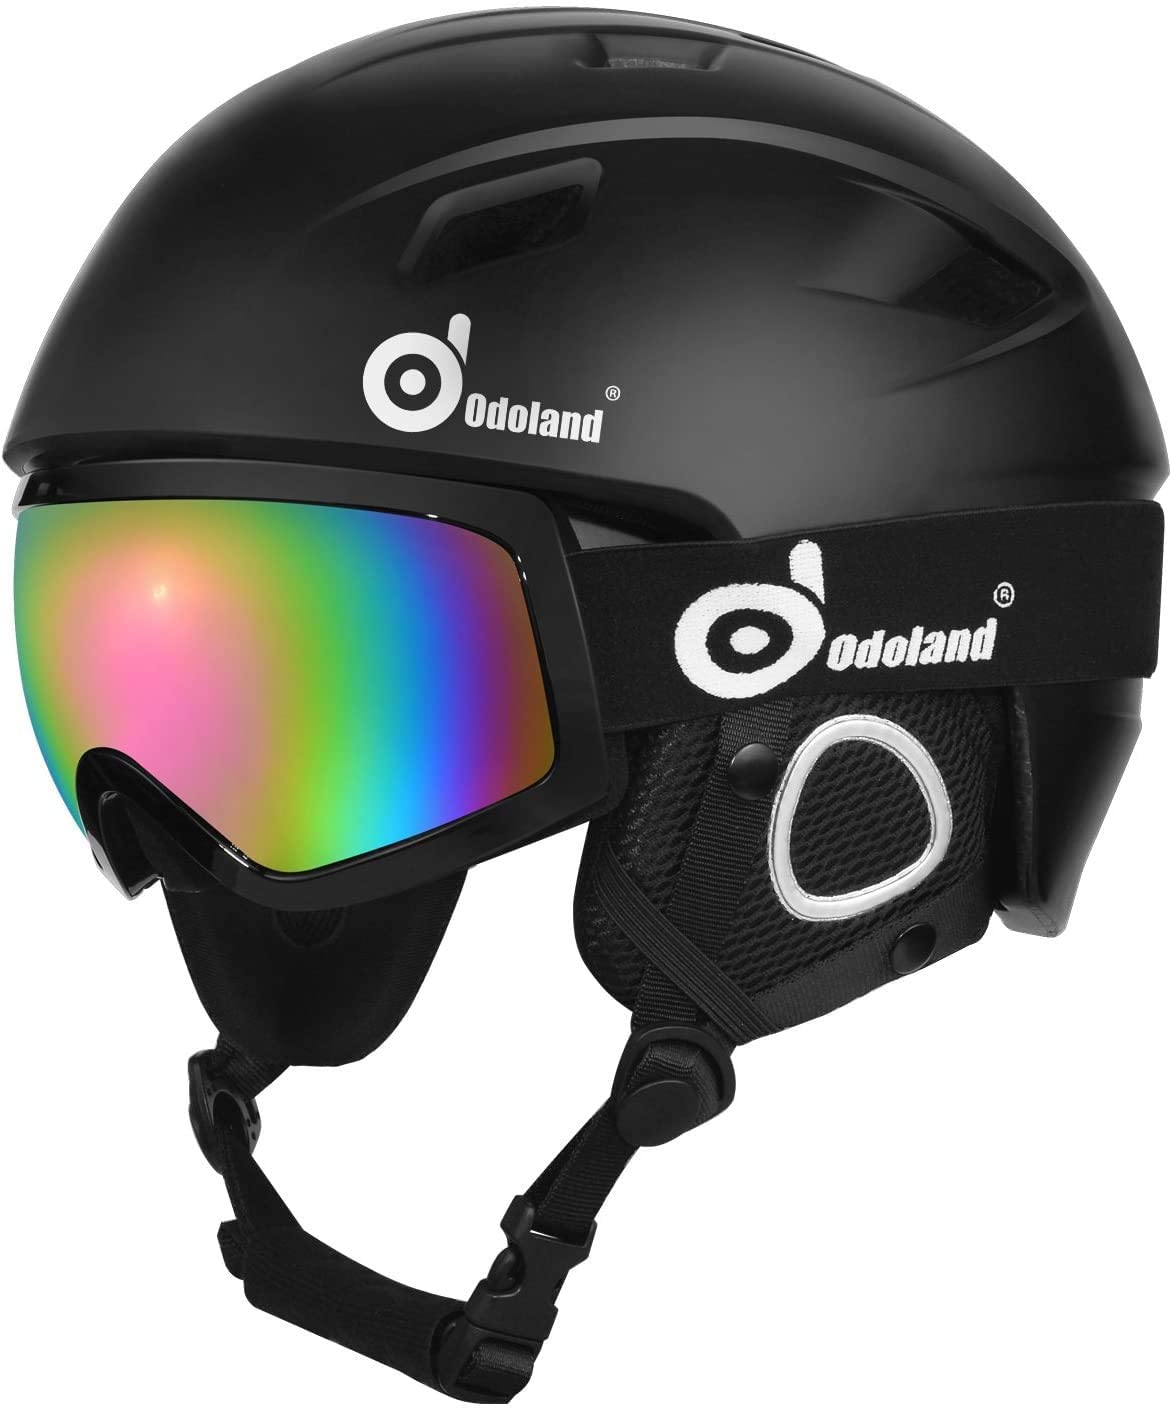 Best Ski Helmet Goggle Combo 5 Best Options for Skiing Adventures